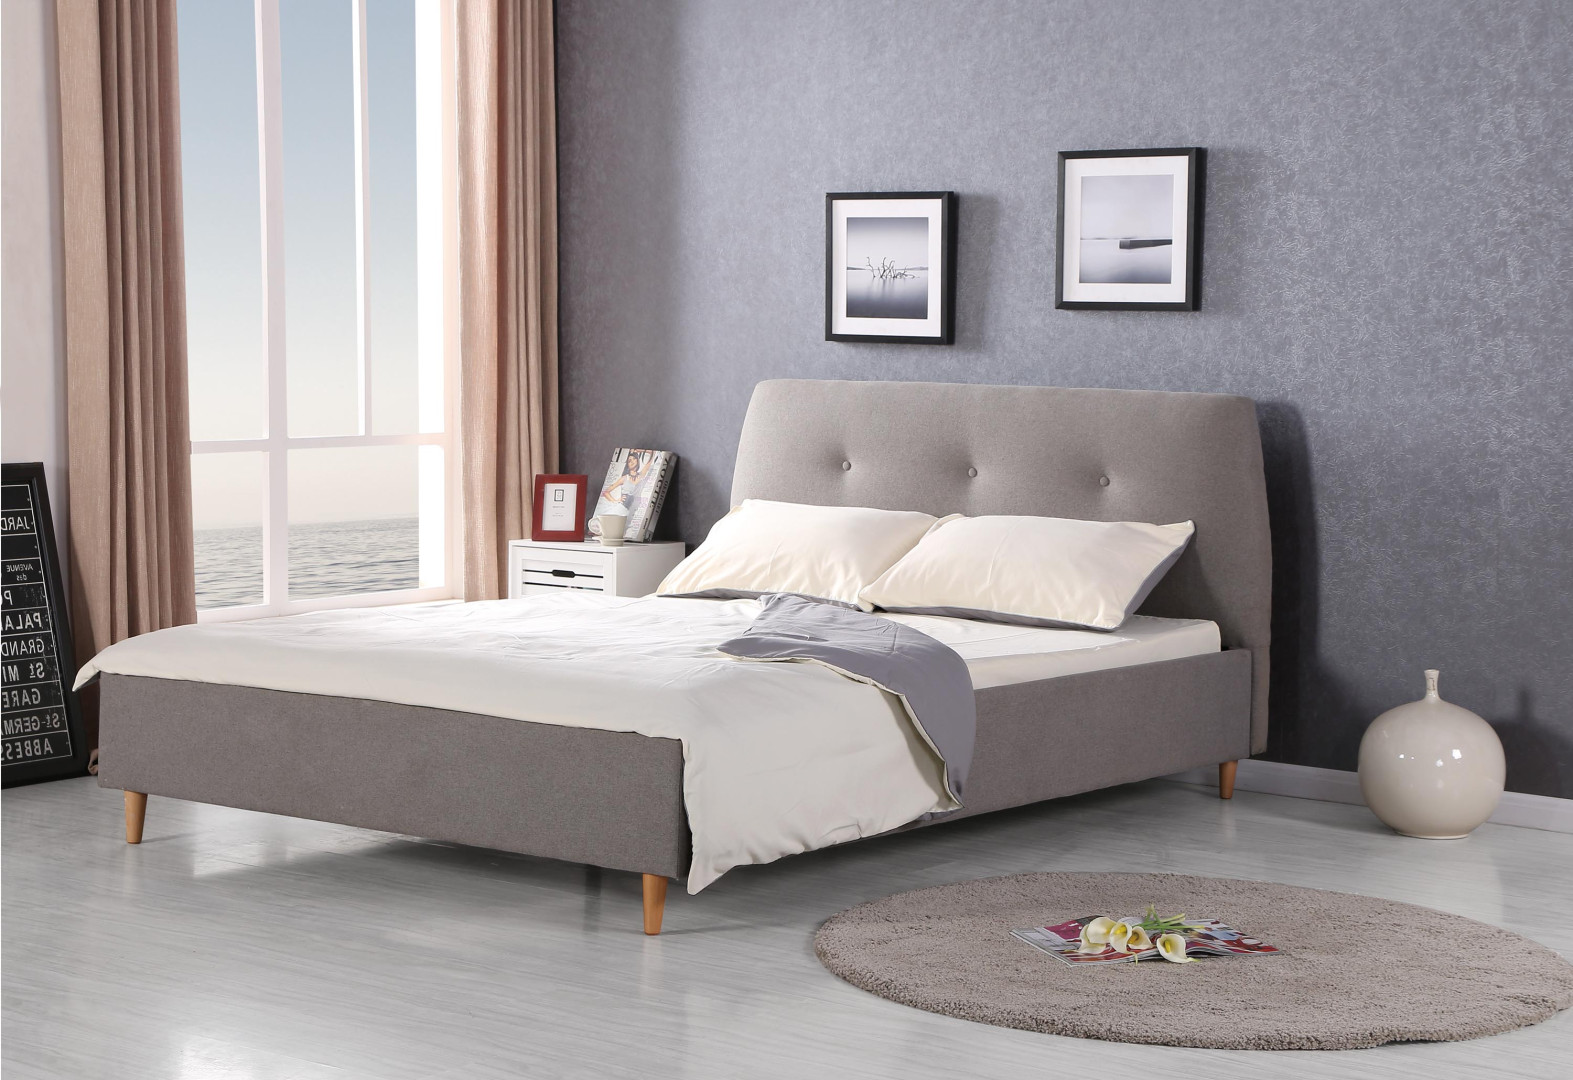 Produkt w kategorii: Łóżka, nazwa produktu: Łóżko Doris - eleganckie, dwuosobowe, skandynawskie